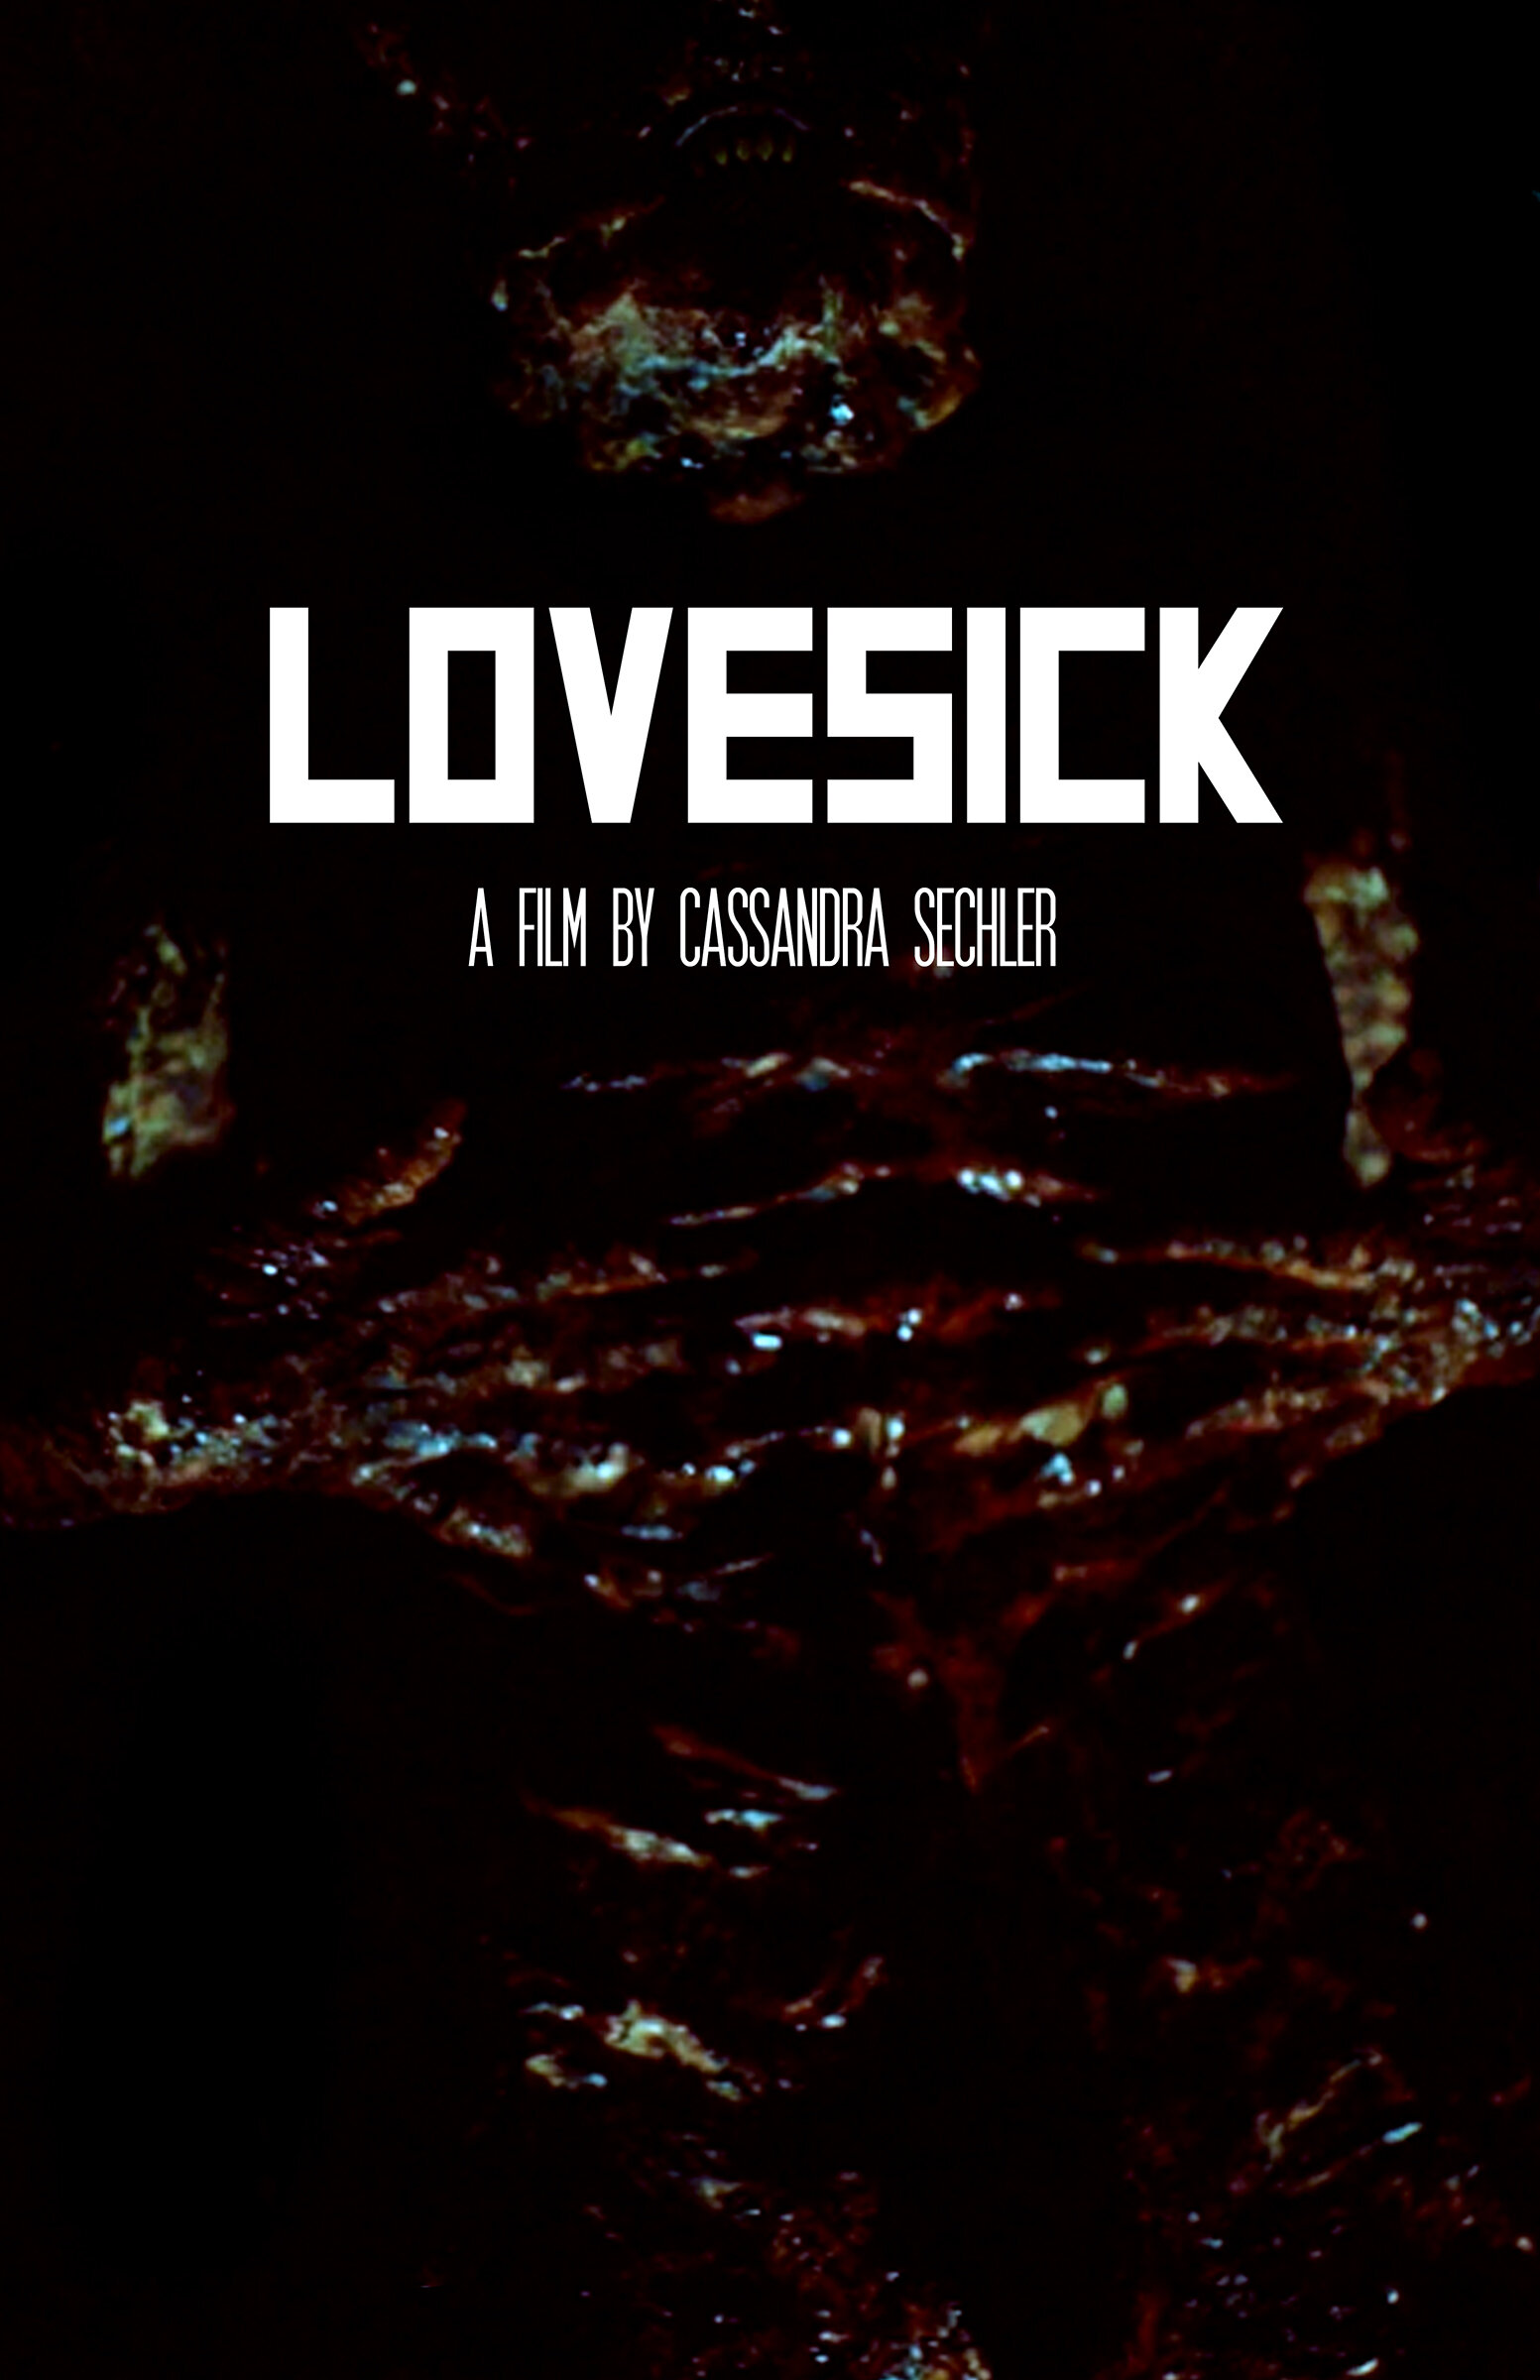 Lovesick Poster web - cassandra sechler.jpg